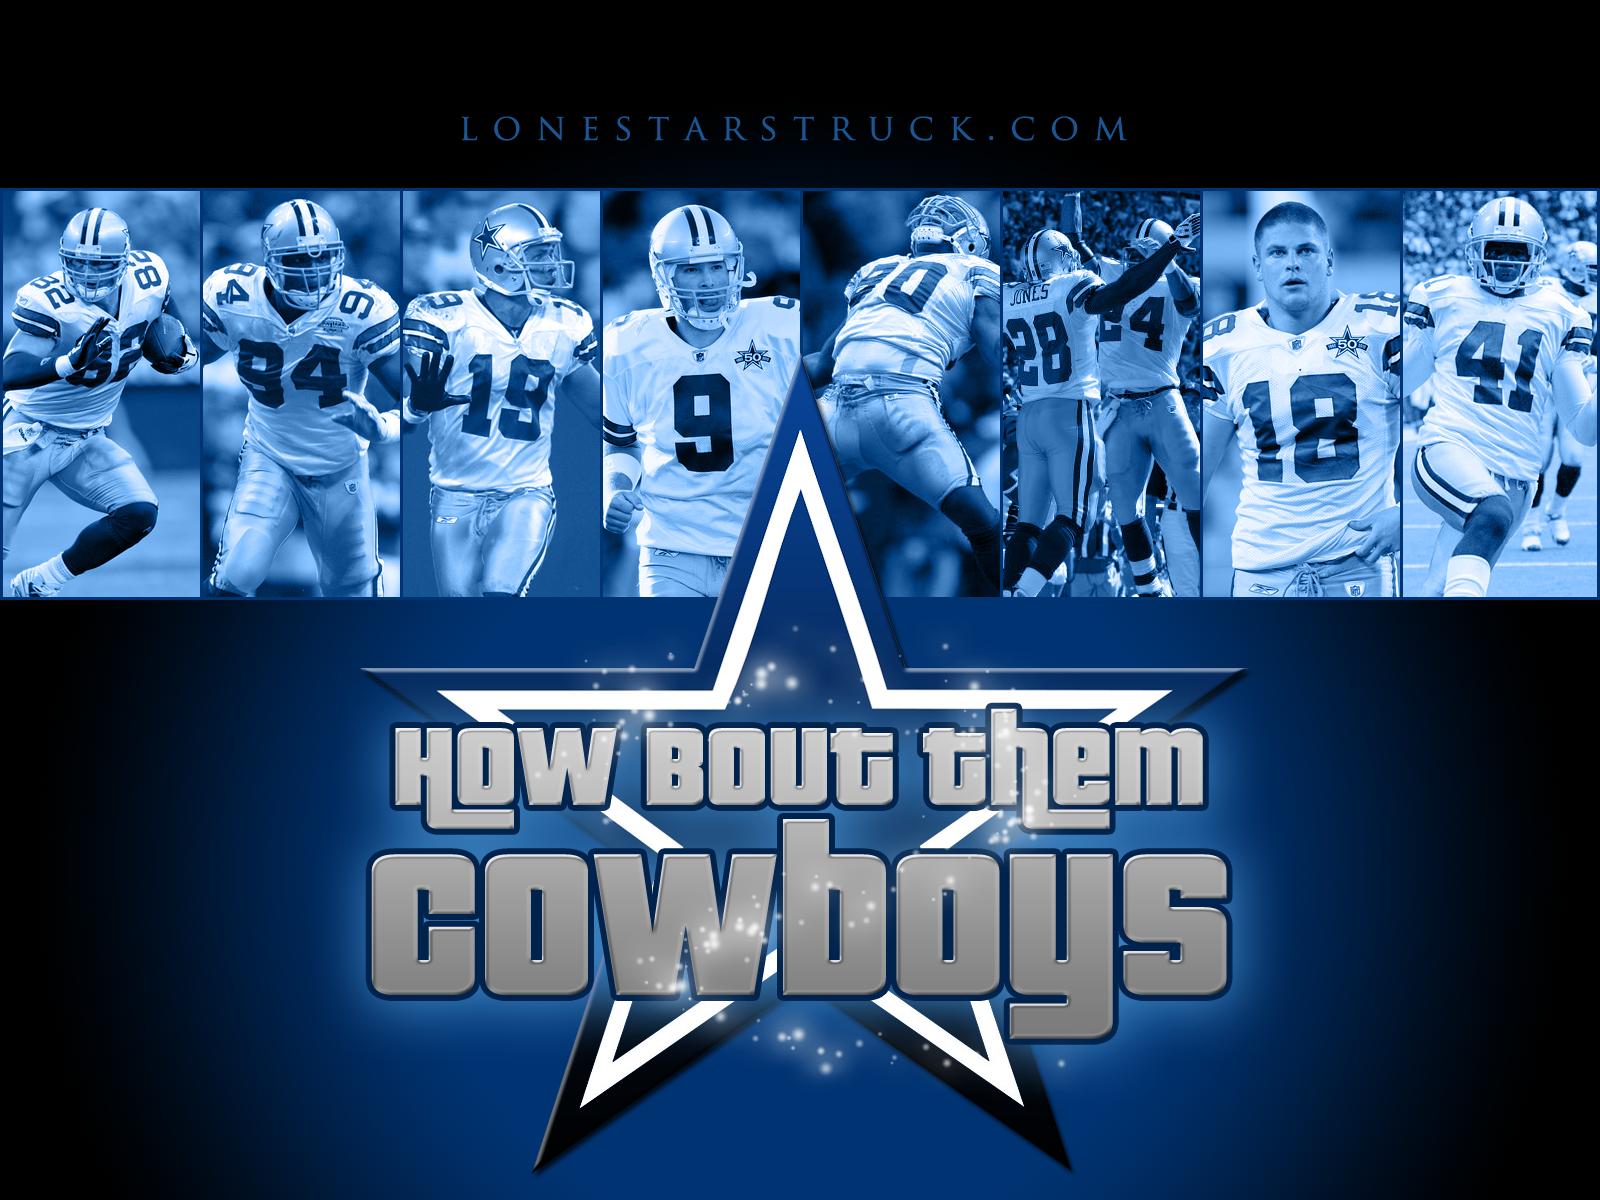 Free Dallas Cowboys desktop image Dallas Cowboys wallpapers 1600x1200